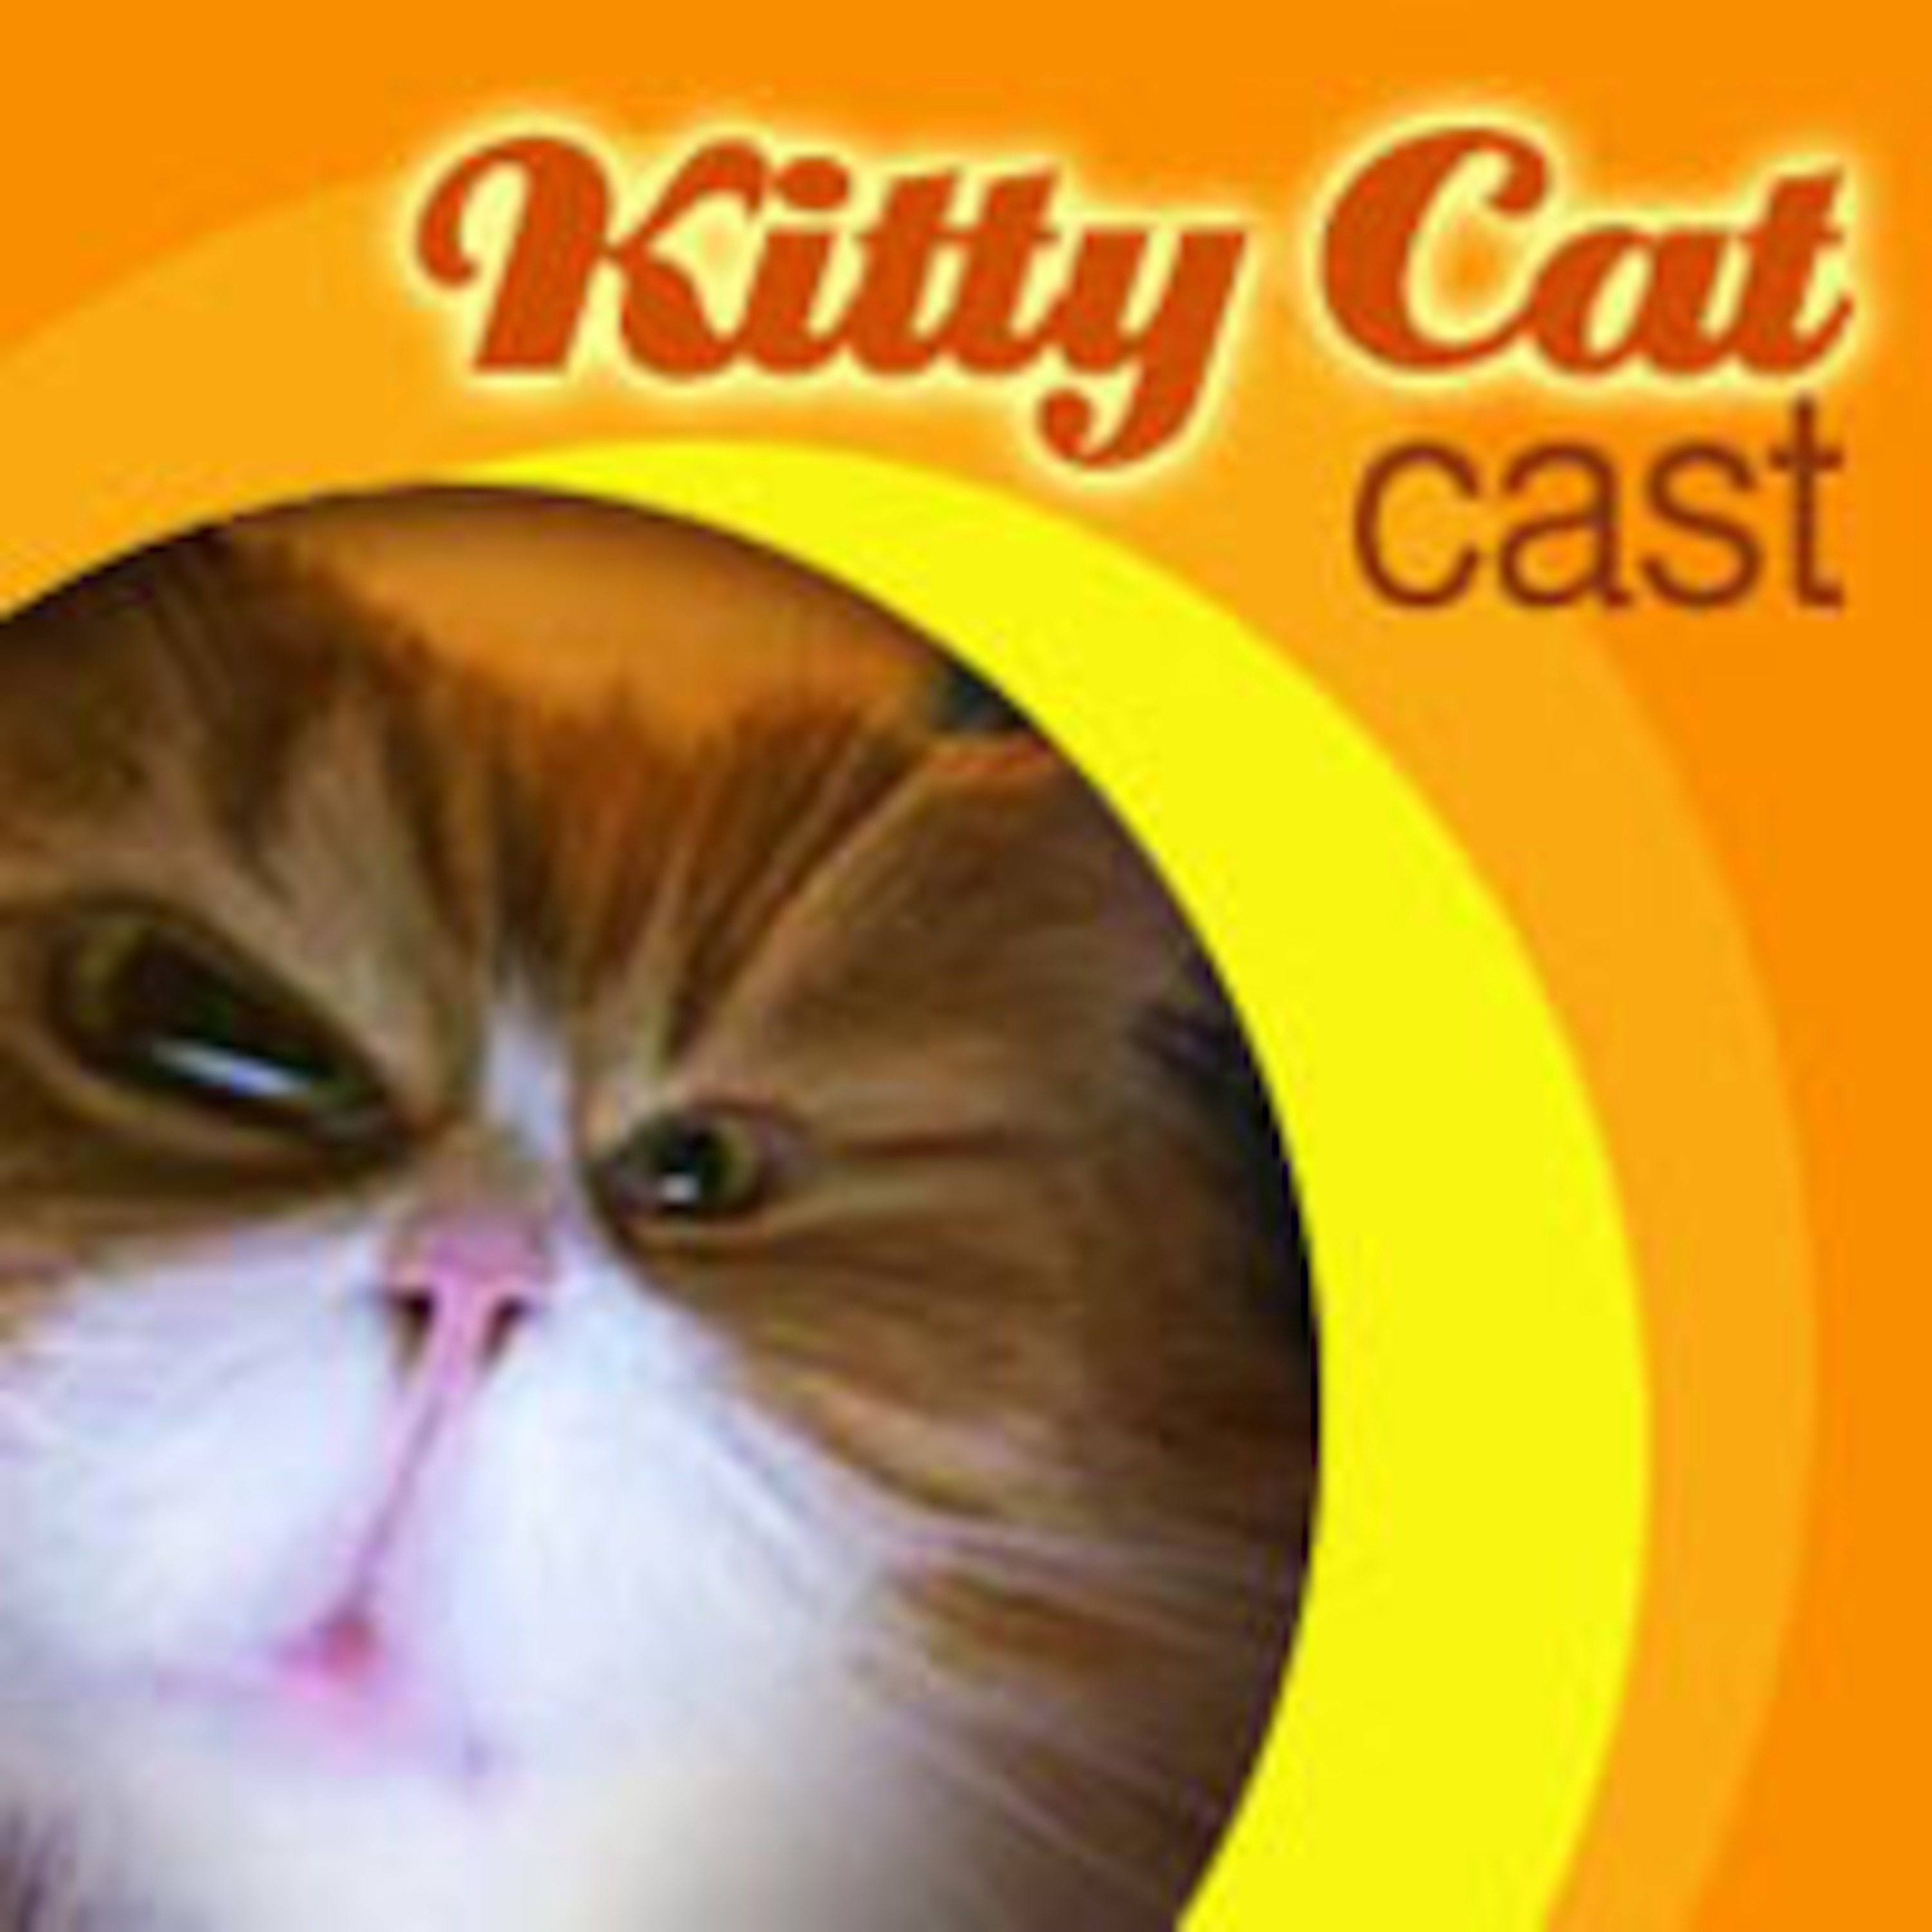 Casting cat